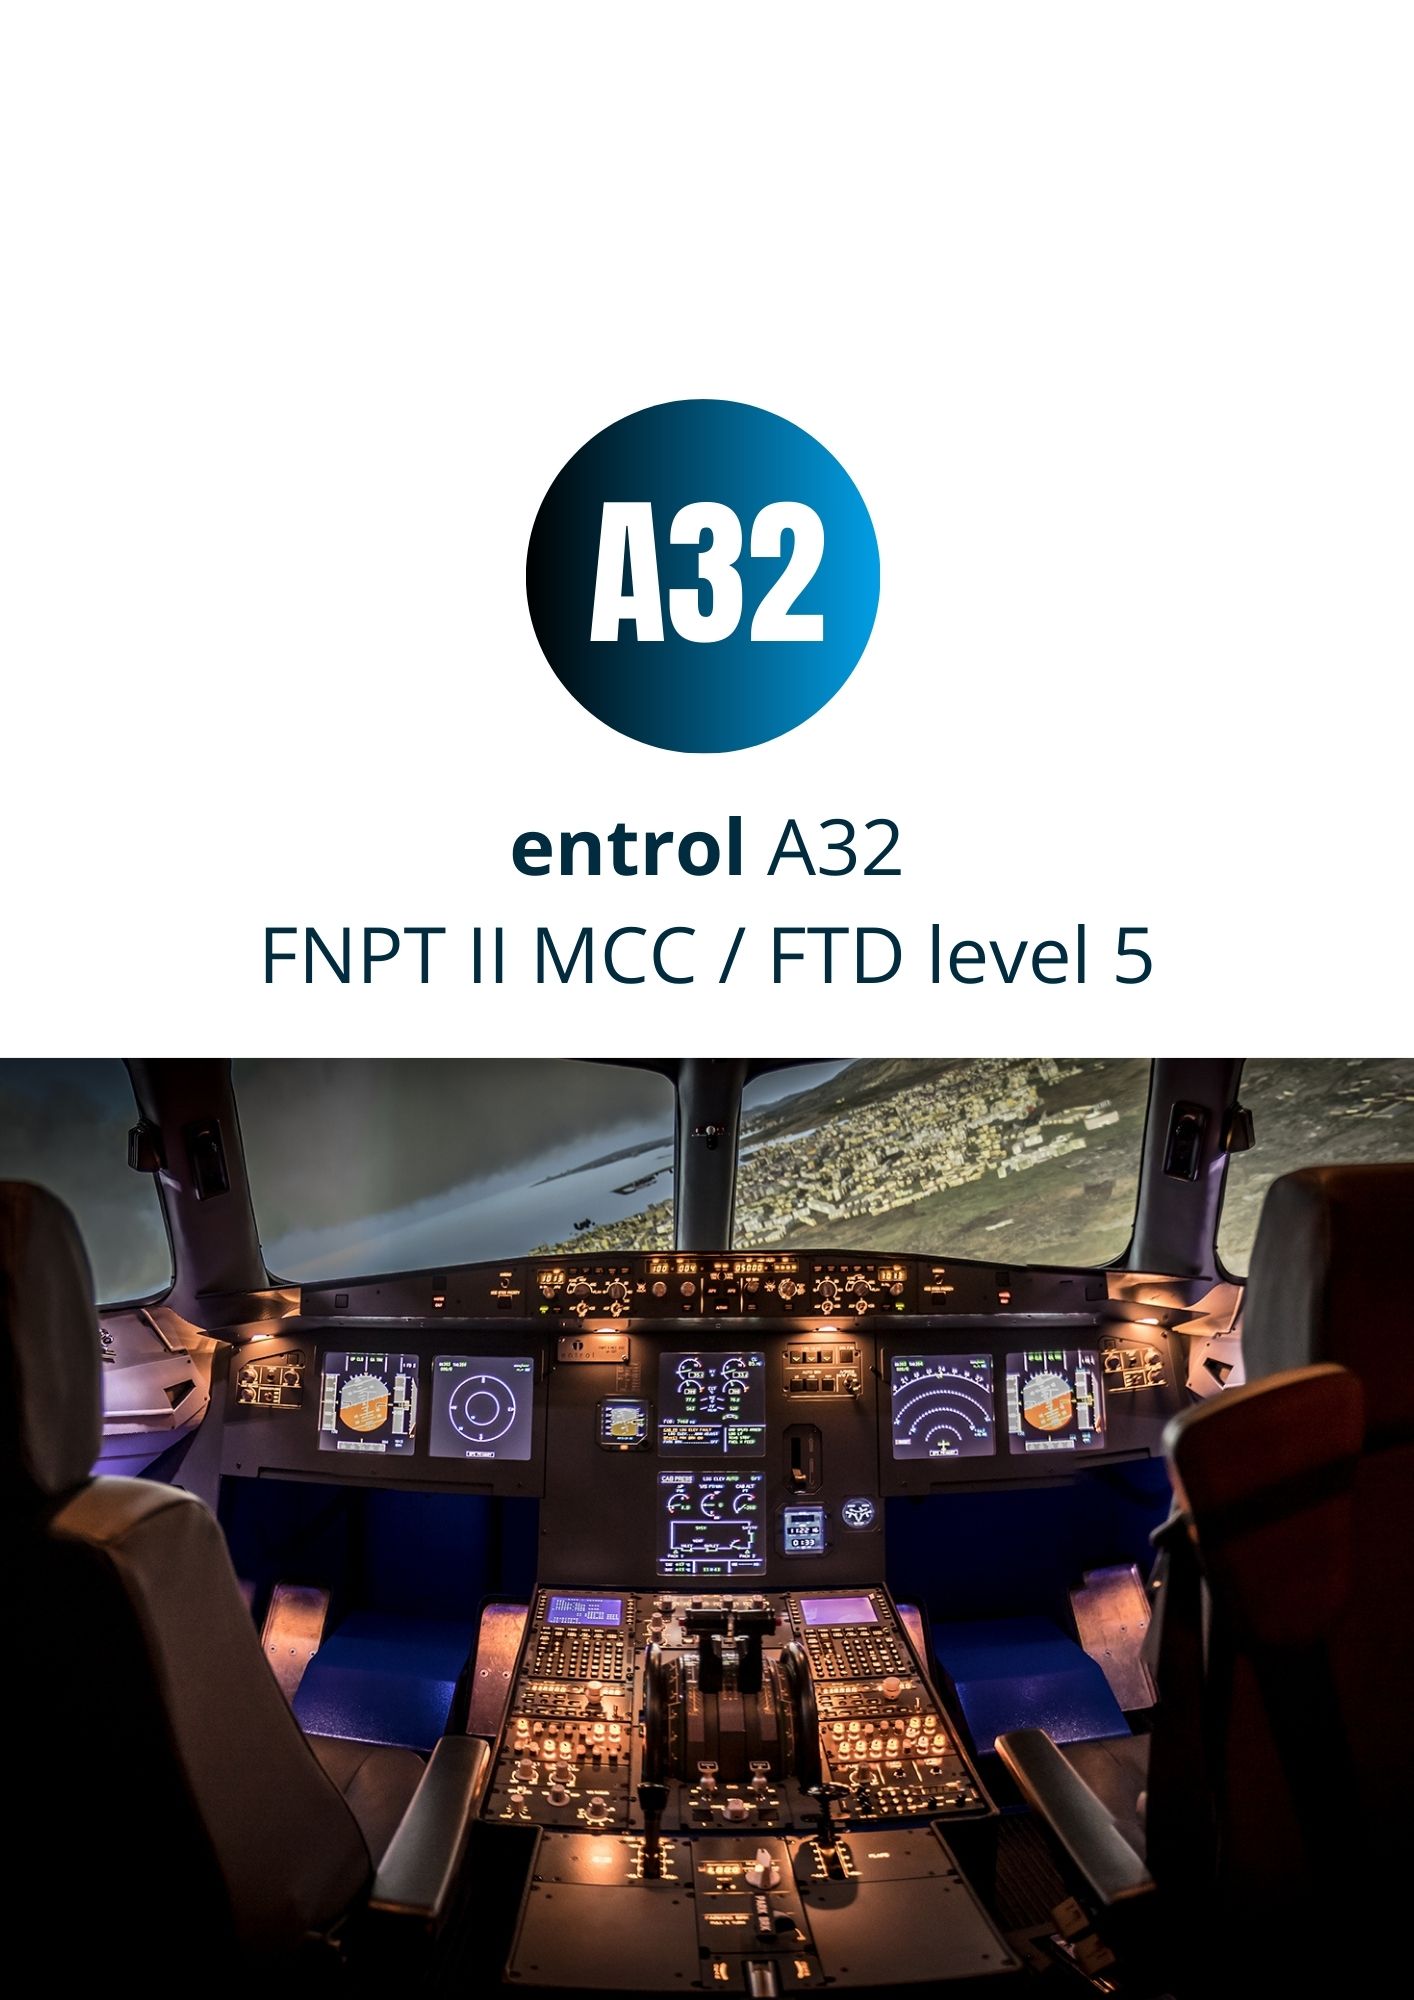 Flyschool purchases an entrol A32 FNPT II MCC